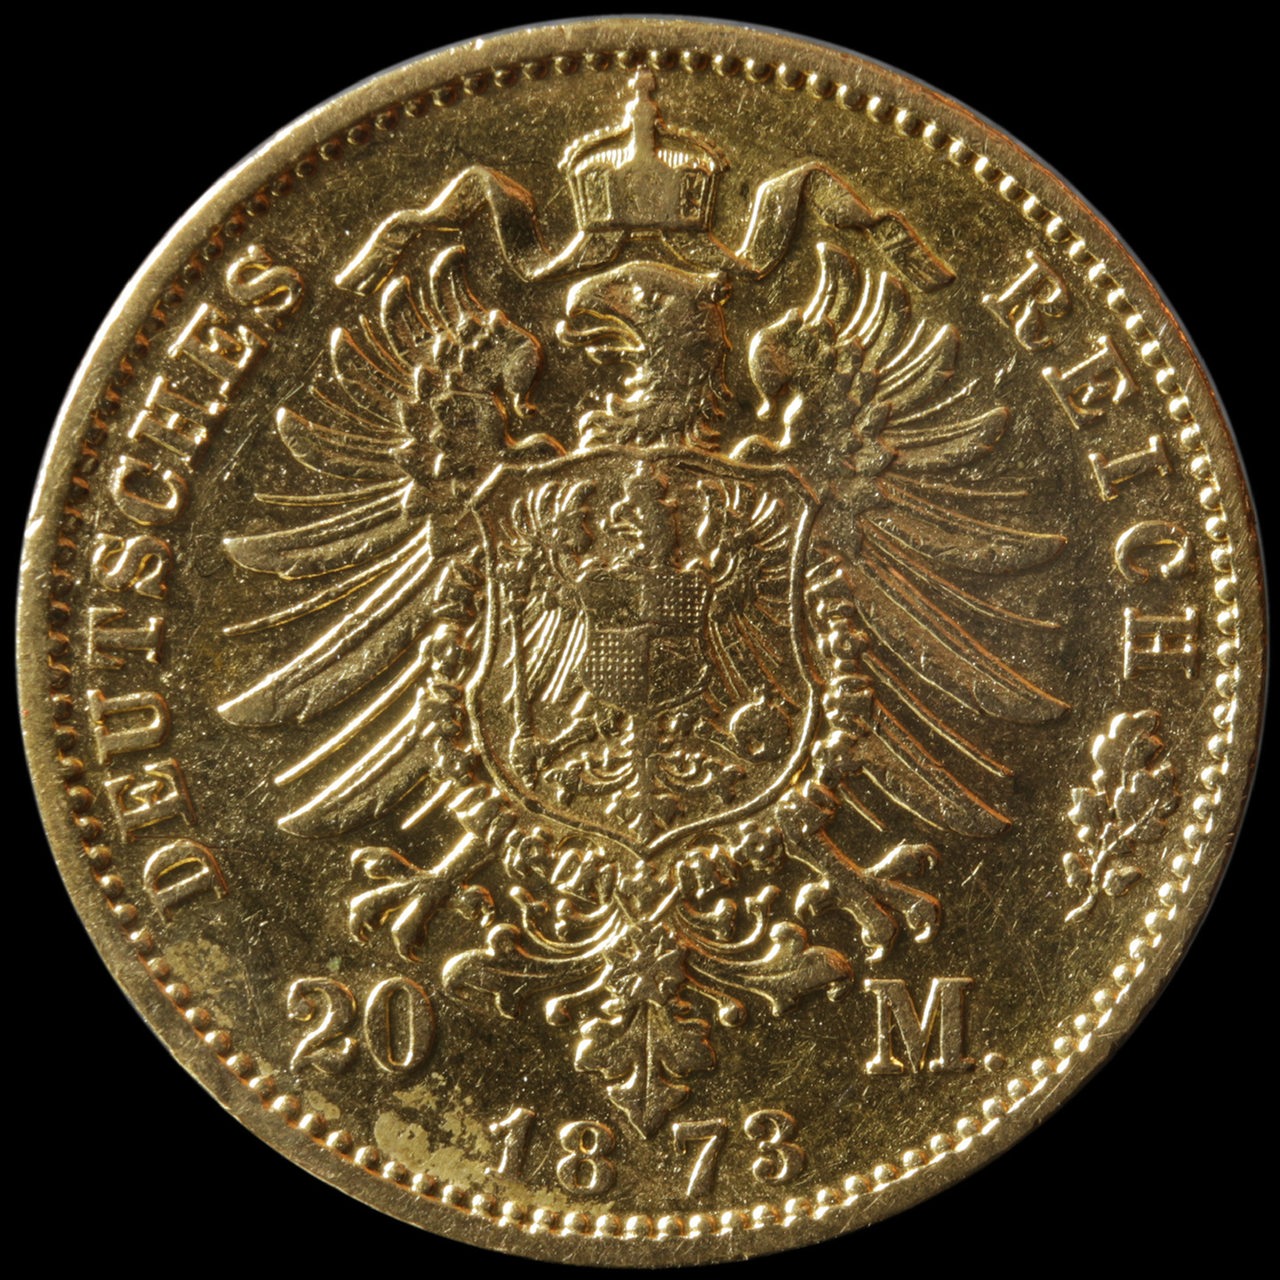 20 Mark Goldmünze aus dem Jahr 1873